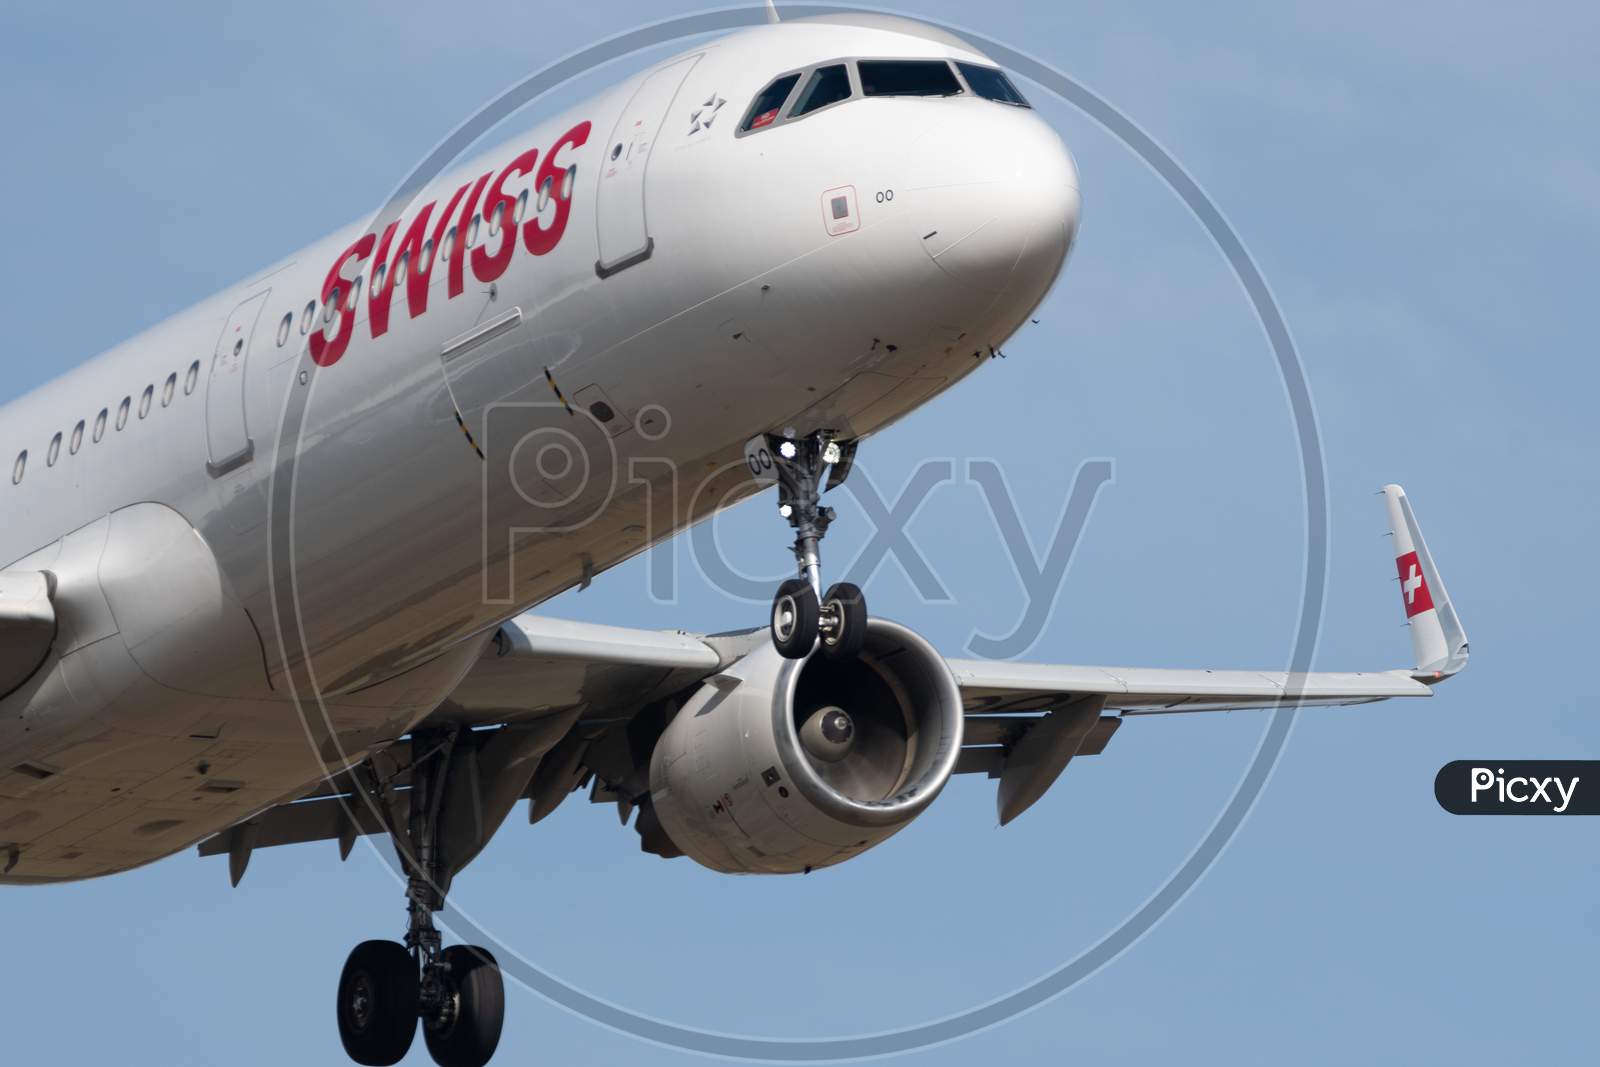 Swiss Airbus A321-212 Jet Landing In Zurich In Switzerland